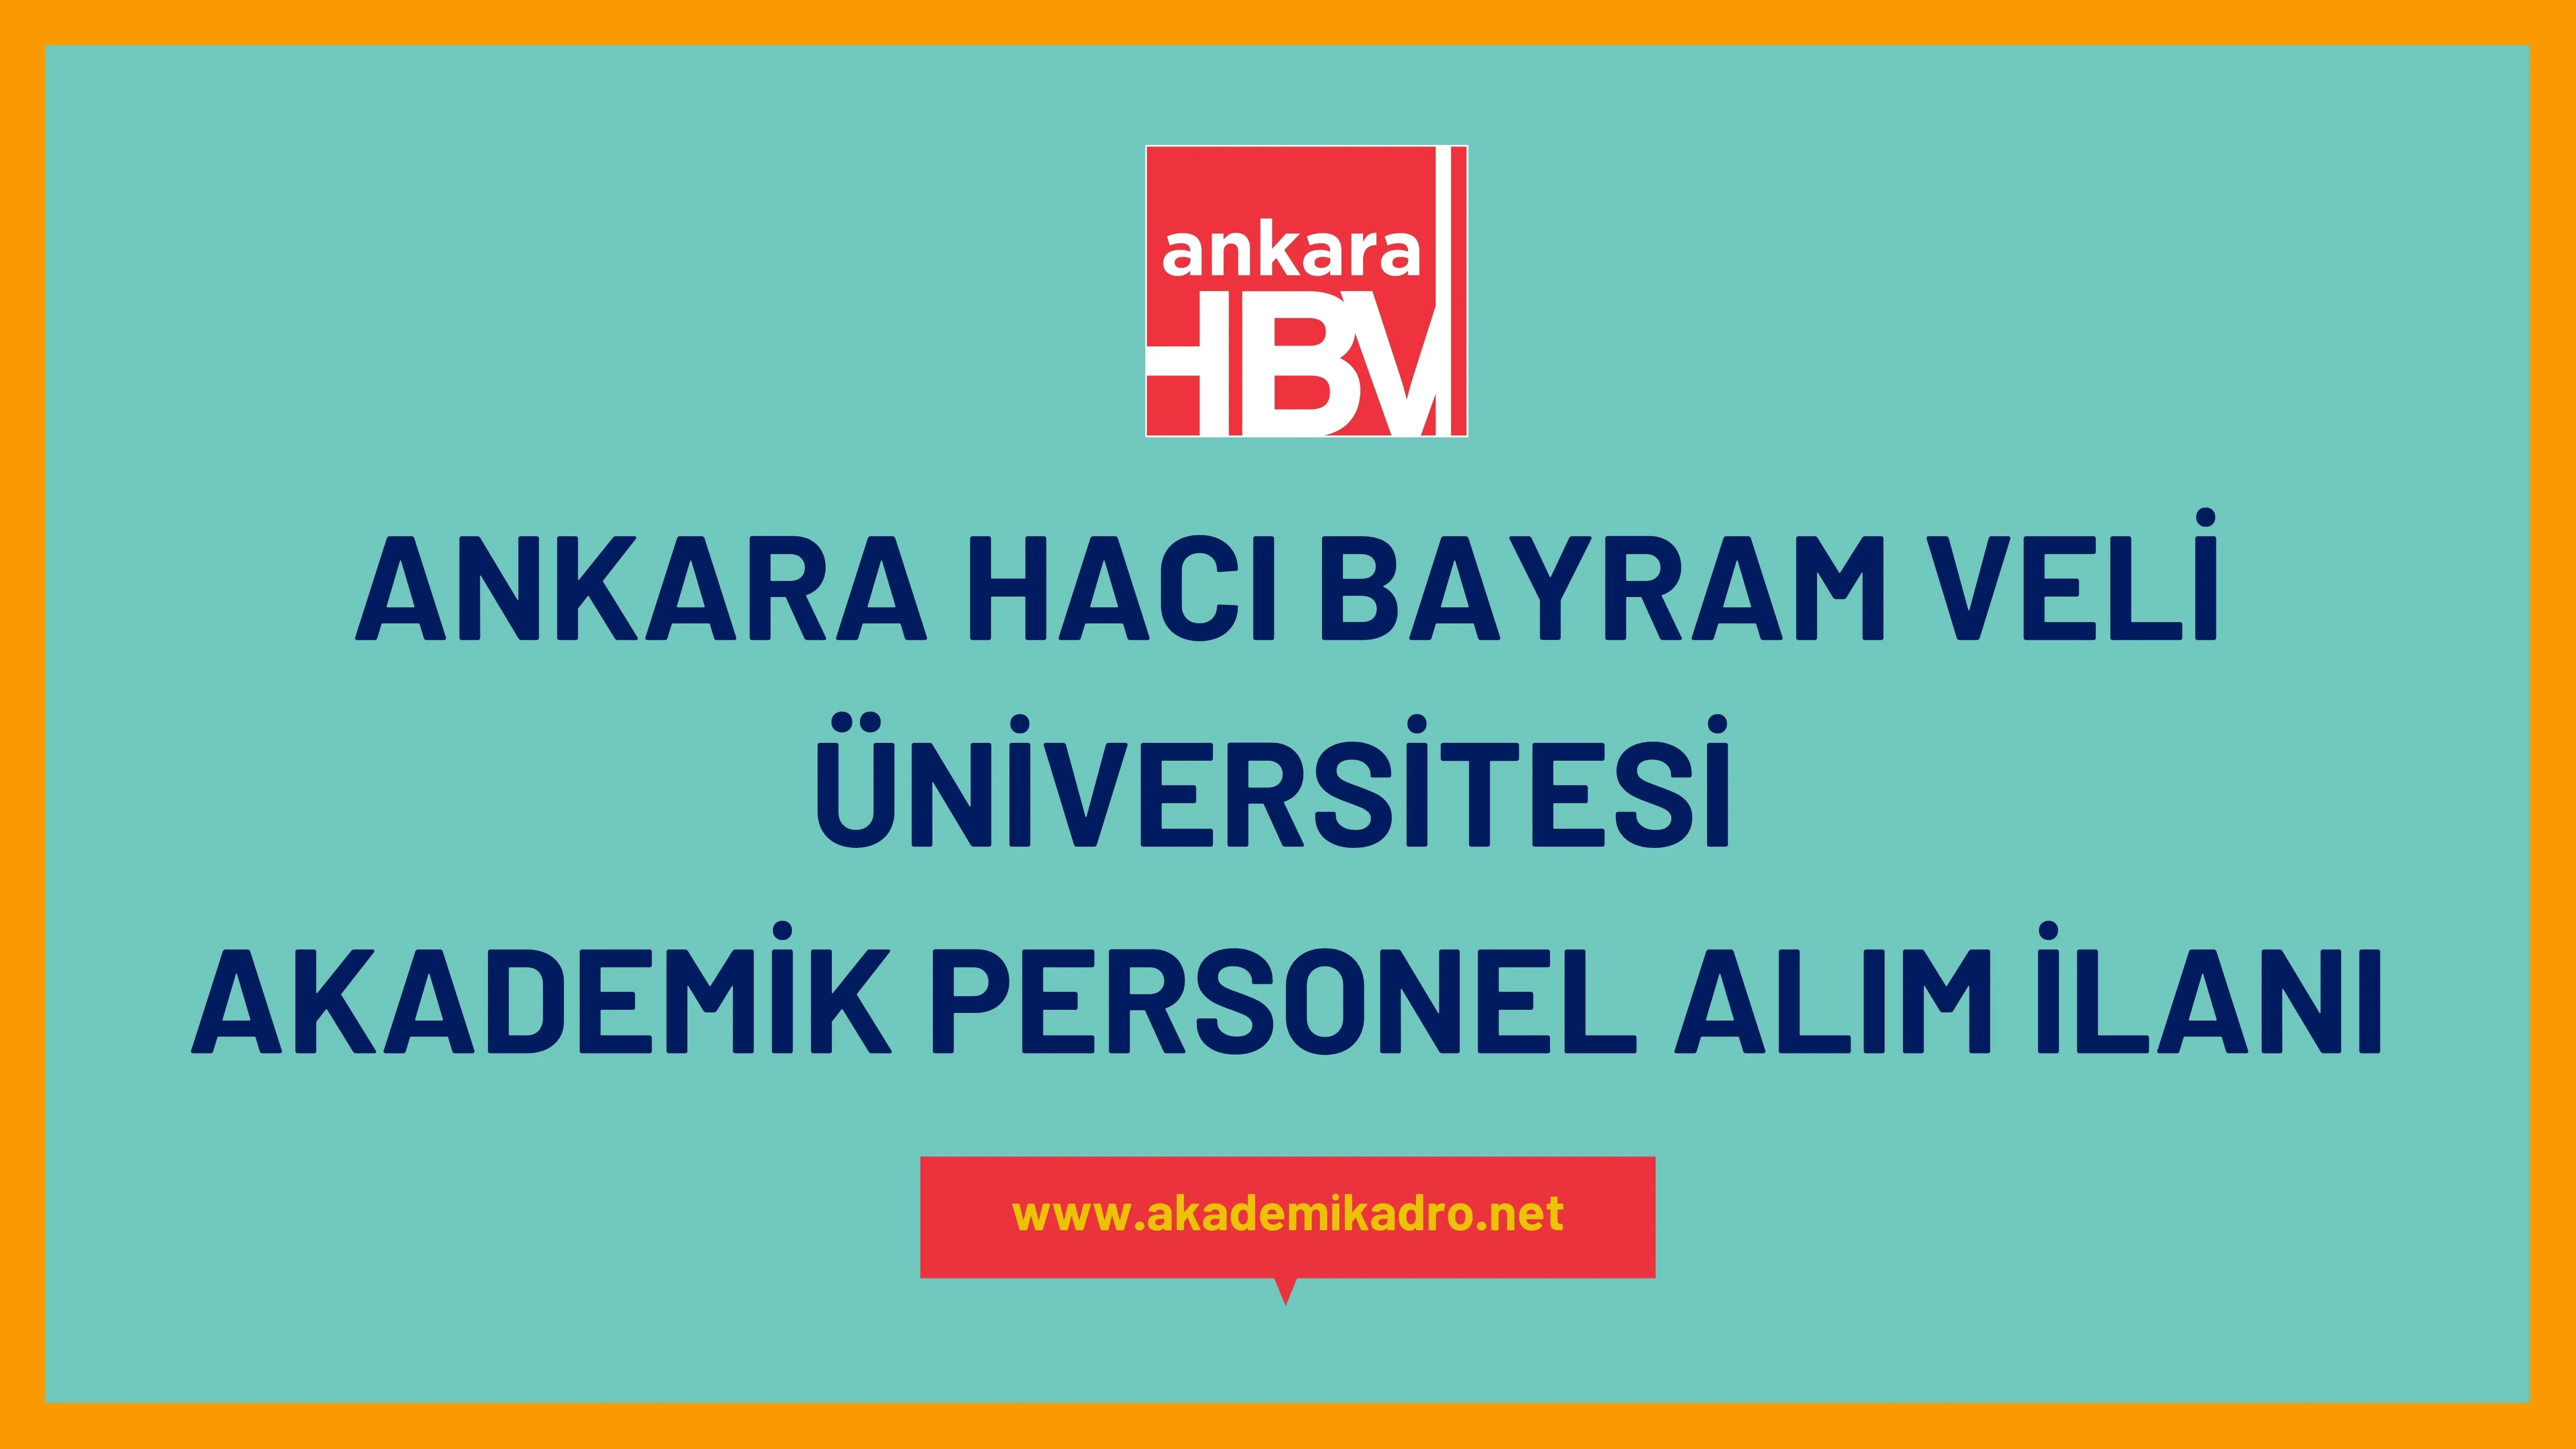 Ankara Hacı Bayram Veli Üniversitesi birçok alandan 13 Akademik personel alacak.